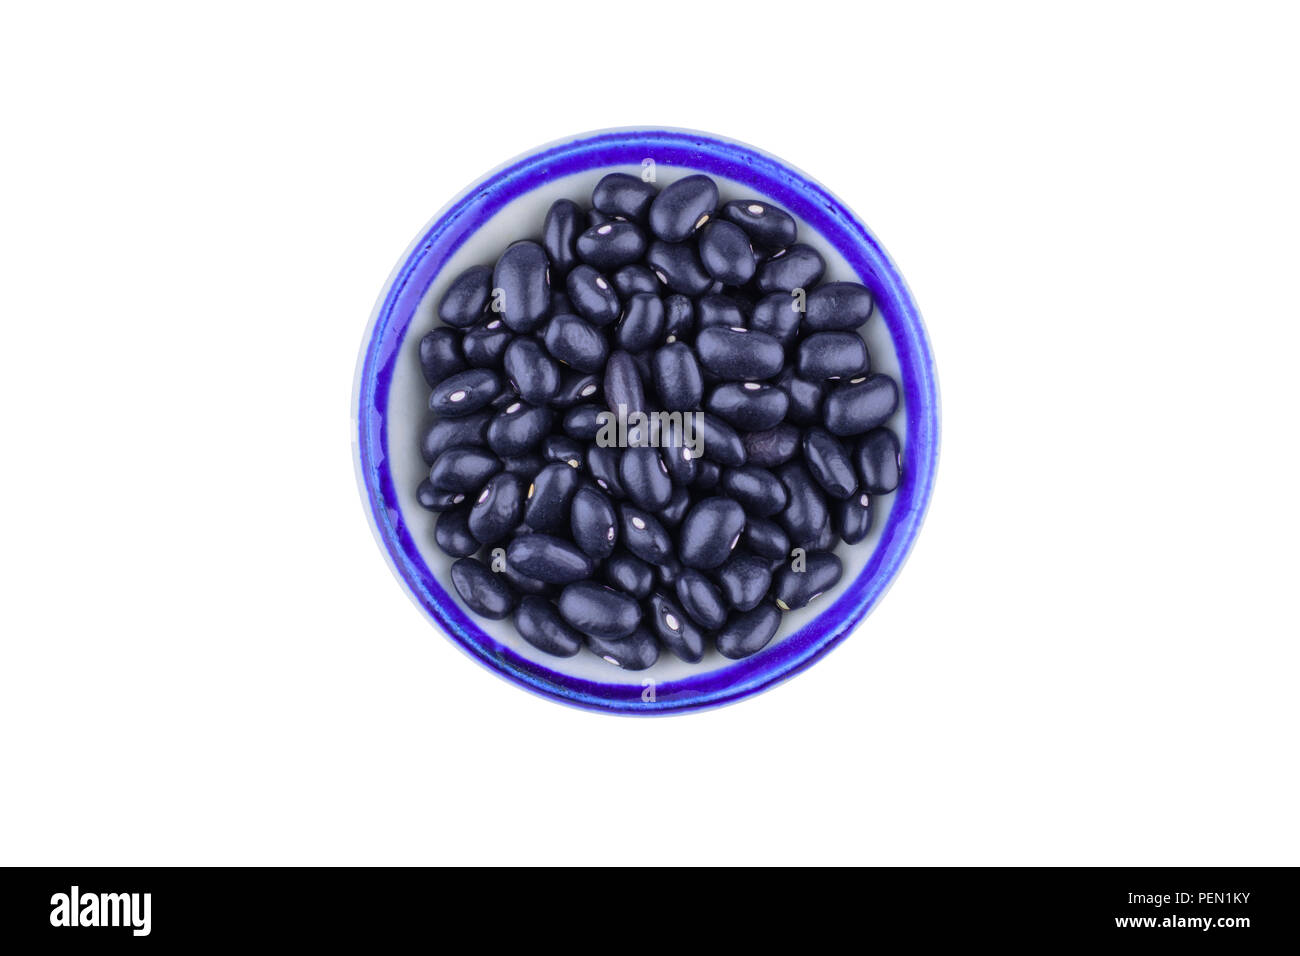 Les haricots noirs dans le bol isolé sur fond blanc avec chemin de coupure de l'alimentation et la nutrition saine.concept. Banque D'Images